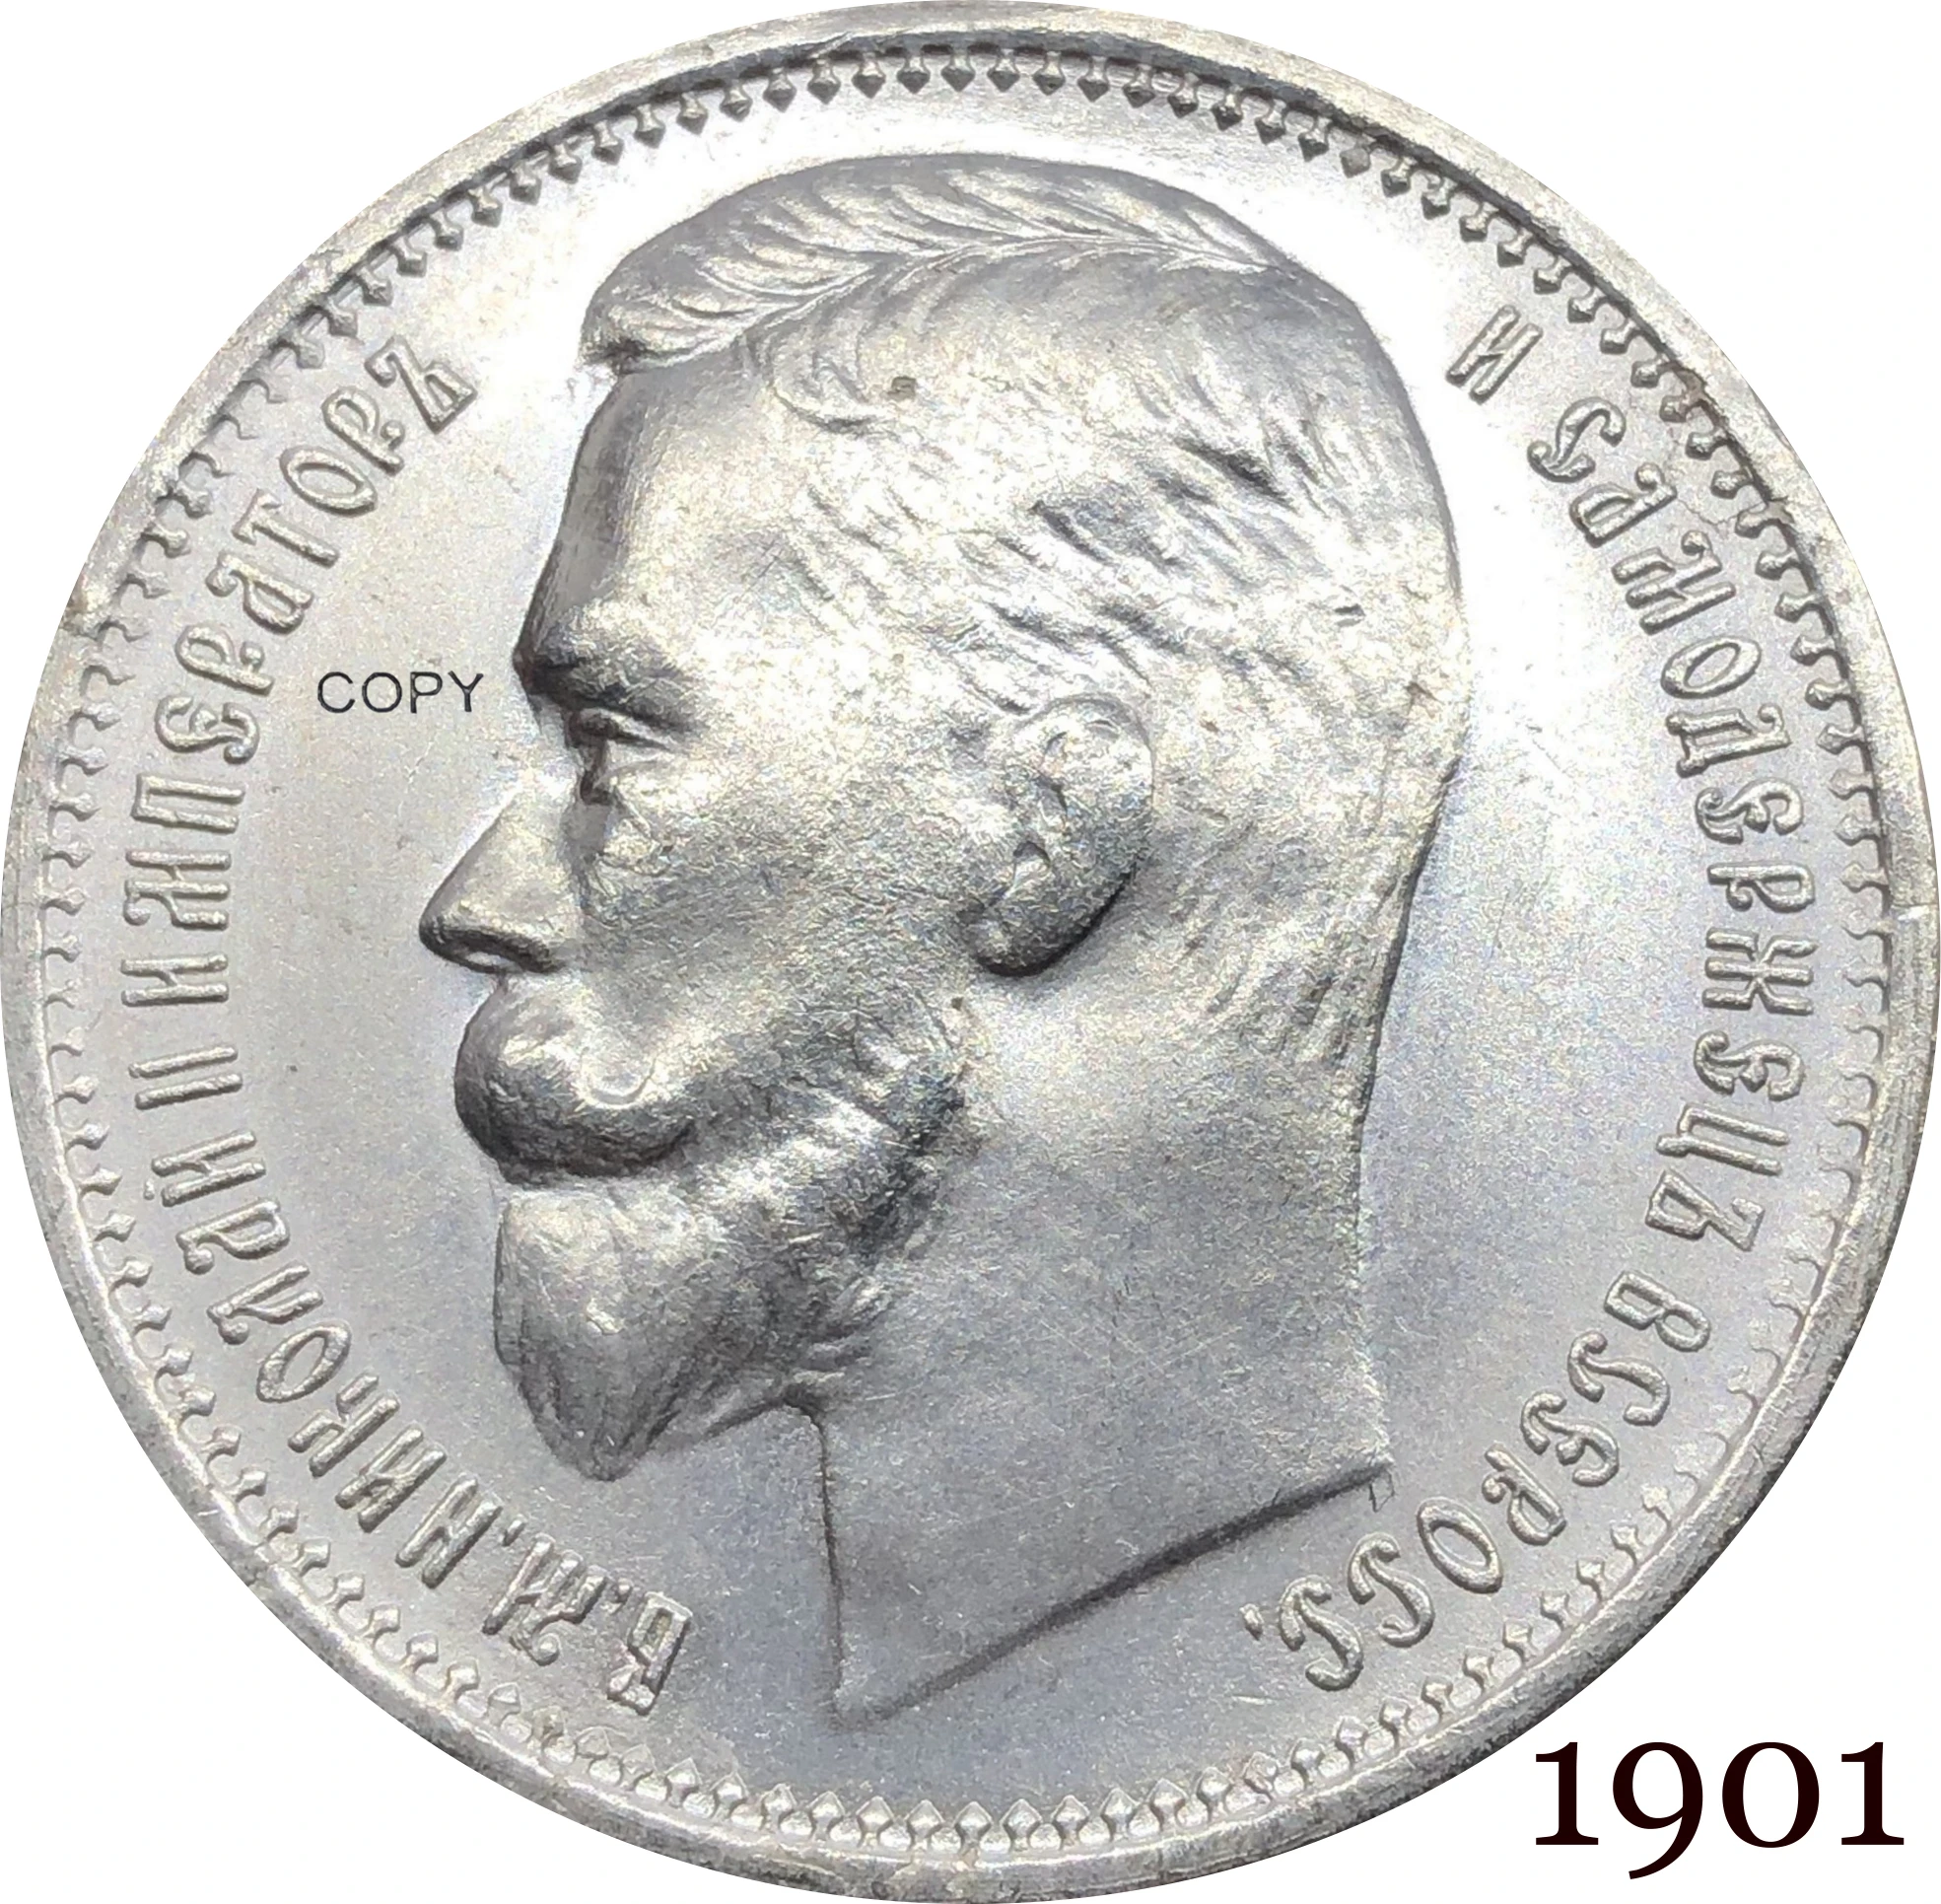 

Россия, монета, Империя Николас II, один рубль 1901, Посеребренная копия, коллекция, памятные монеты